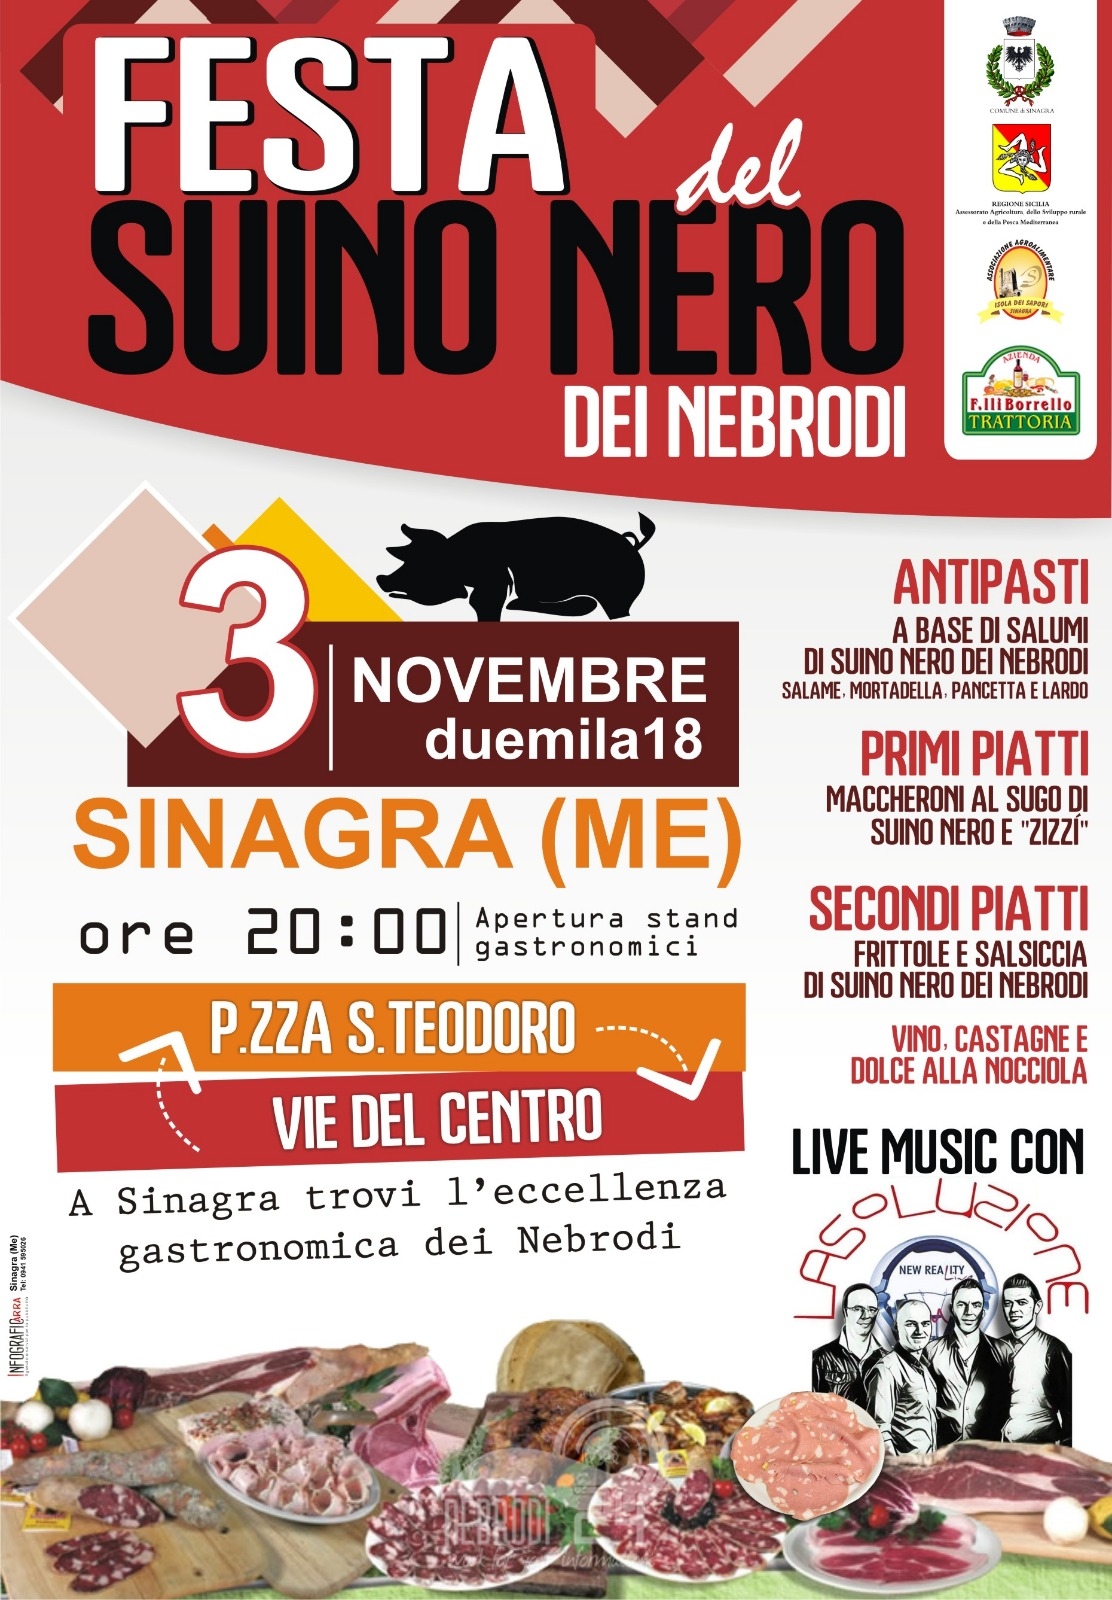 Sinagra – Sabato prossimo 3 novembre la Festa del suino nero dei Nebrodi